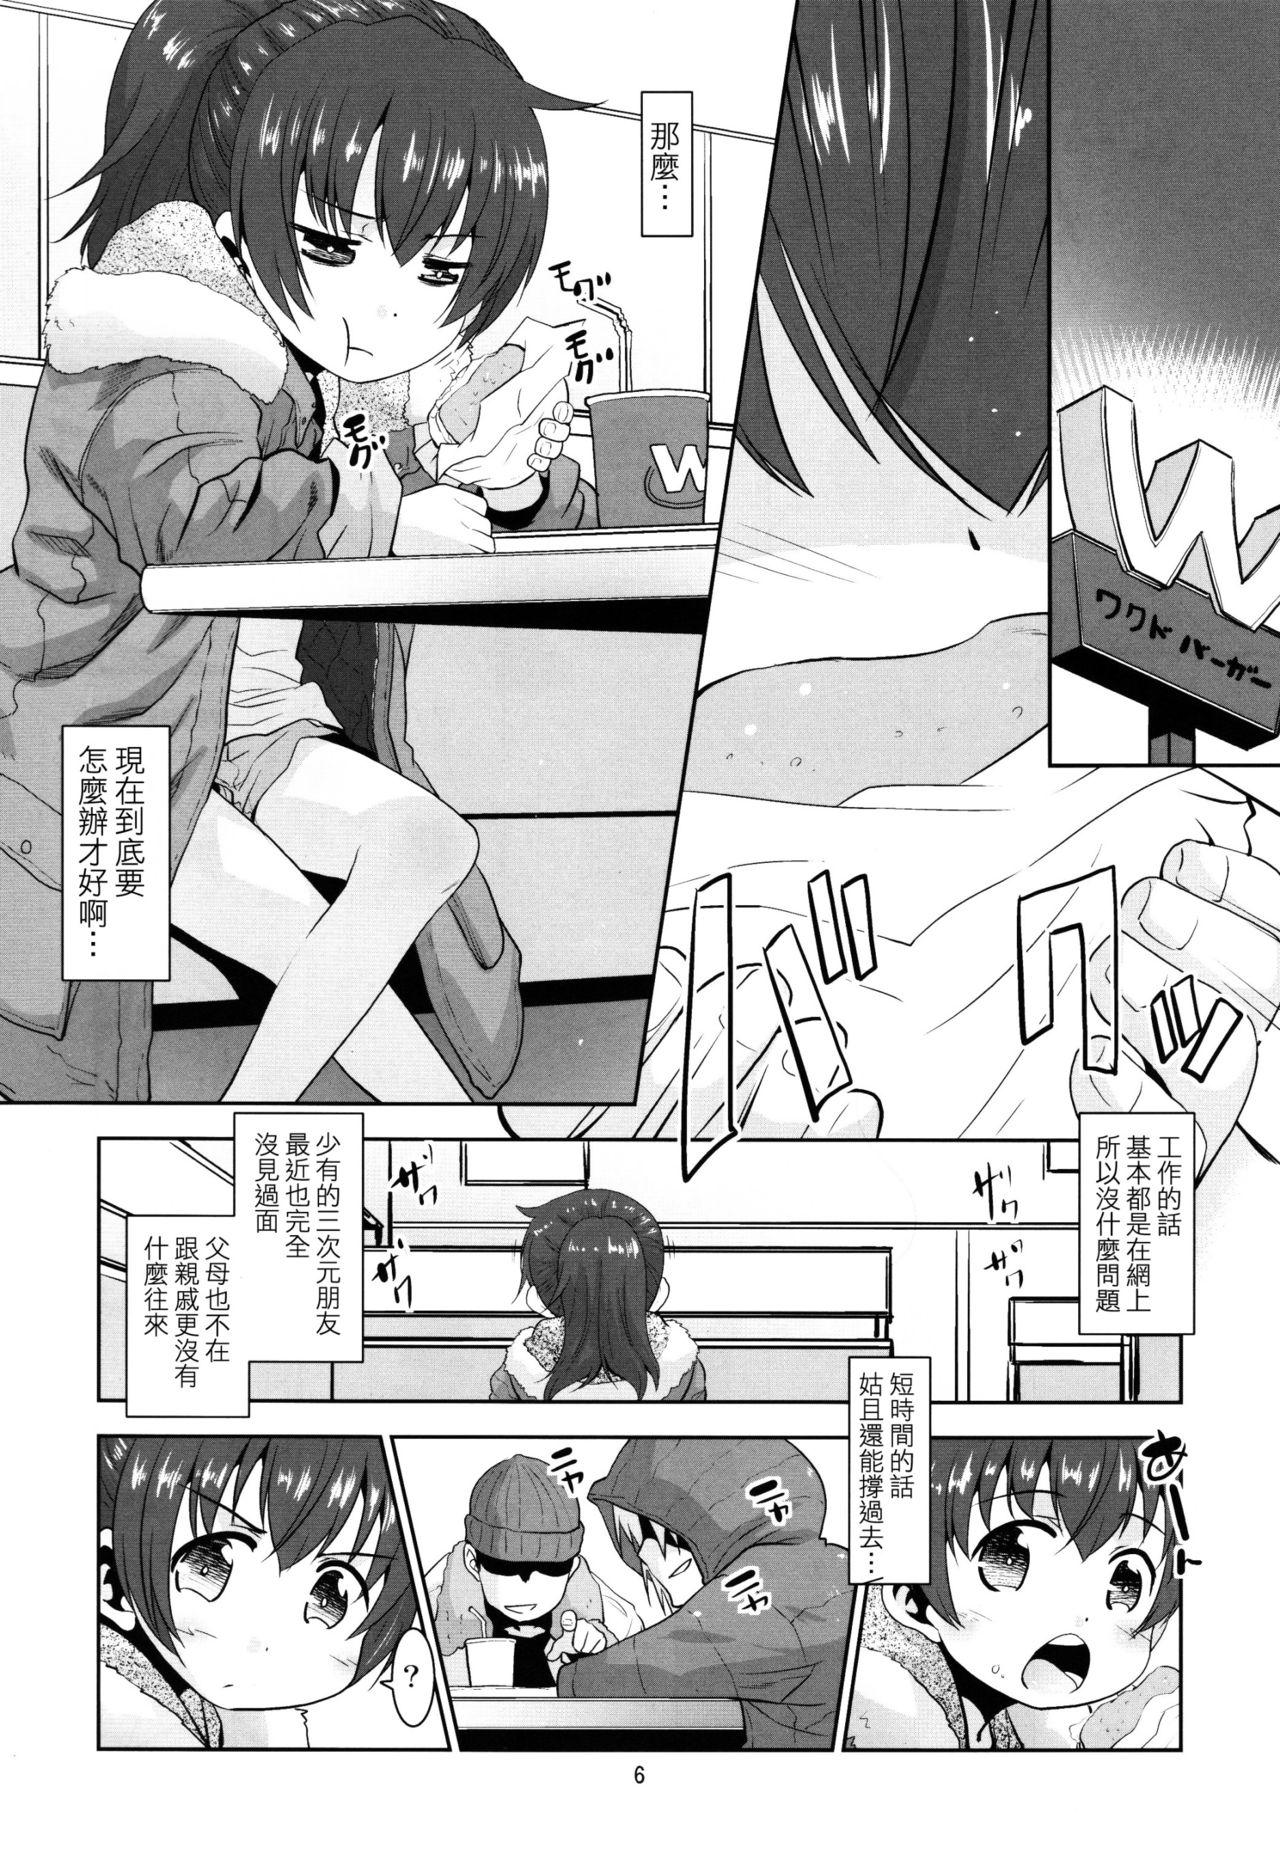 Marido Toriatsukai Chuui!! Mahou no Datsumou Cream. Peeing - Page 5